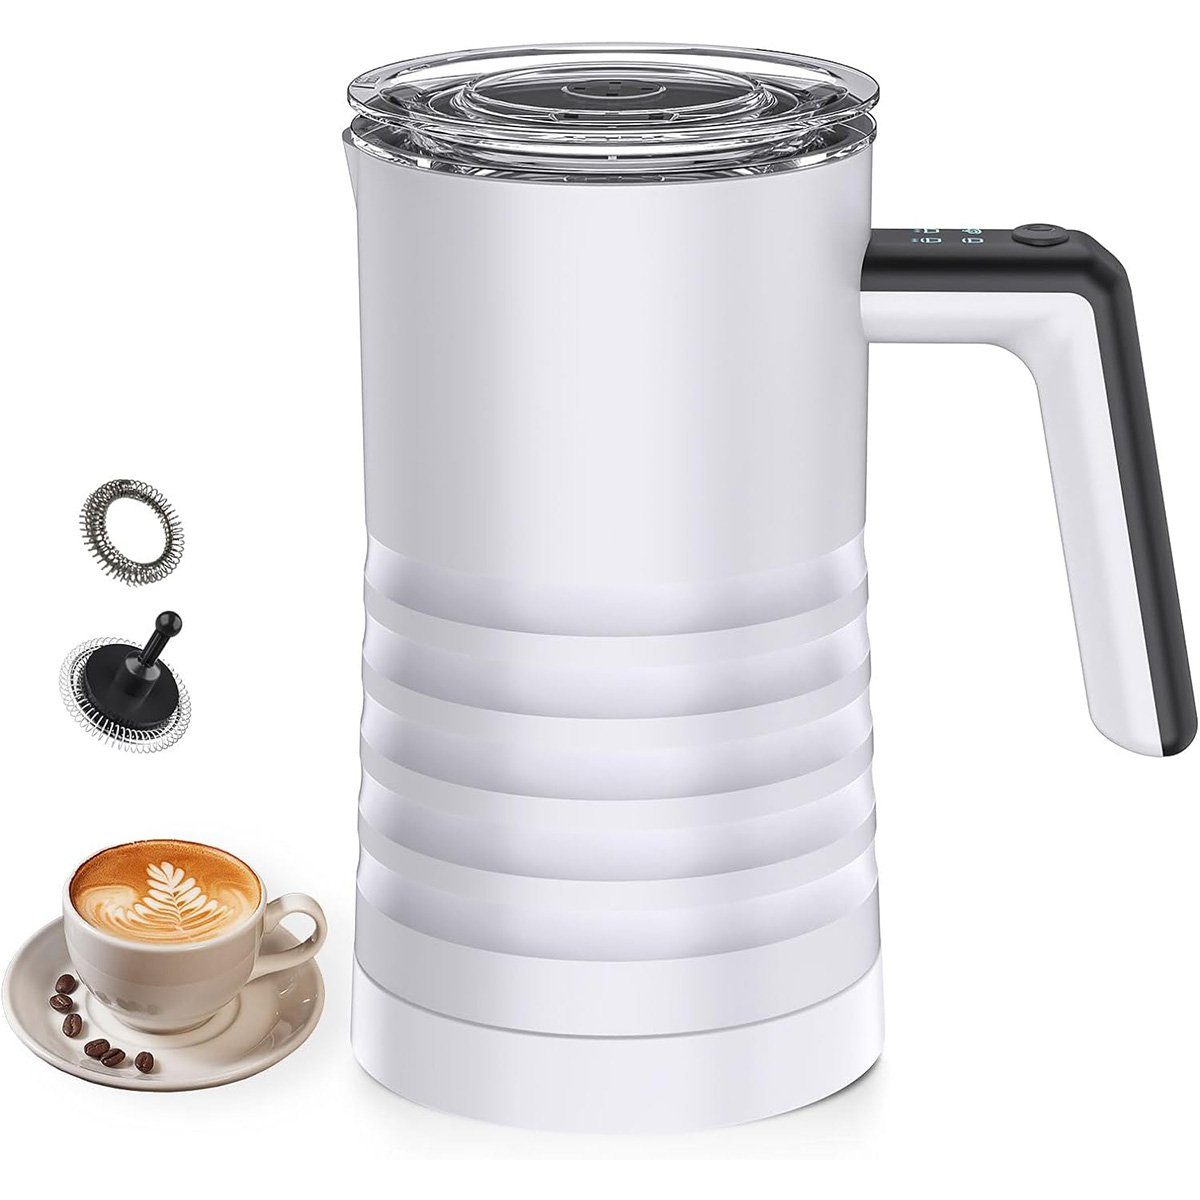 yozhiqu Milchaufschäumer Elektrischer Milchaufschäumer und Dampfgarer,automatischer Milchwärmer, antihaftbeschichtete Innenseite, Edelstahl für Kaffee/Latte/Cappuccino